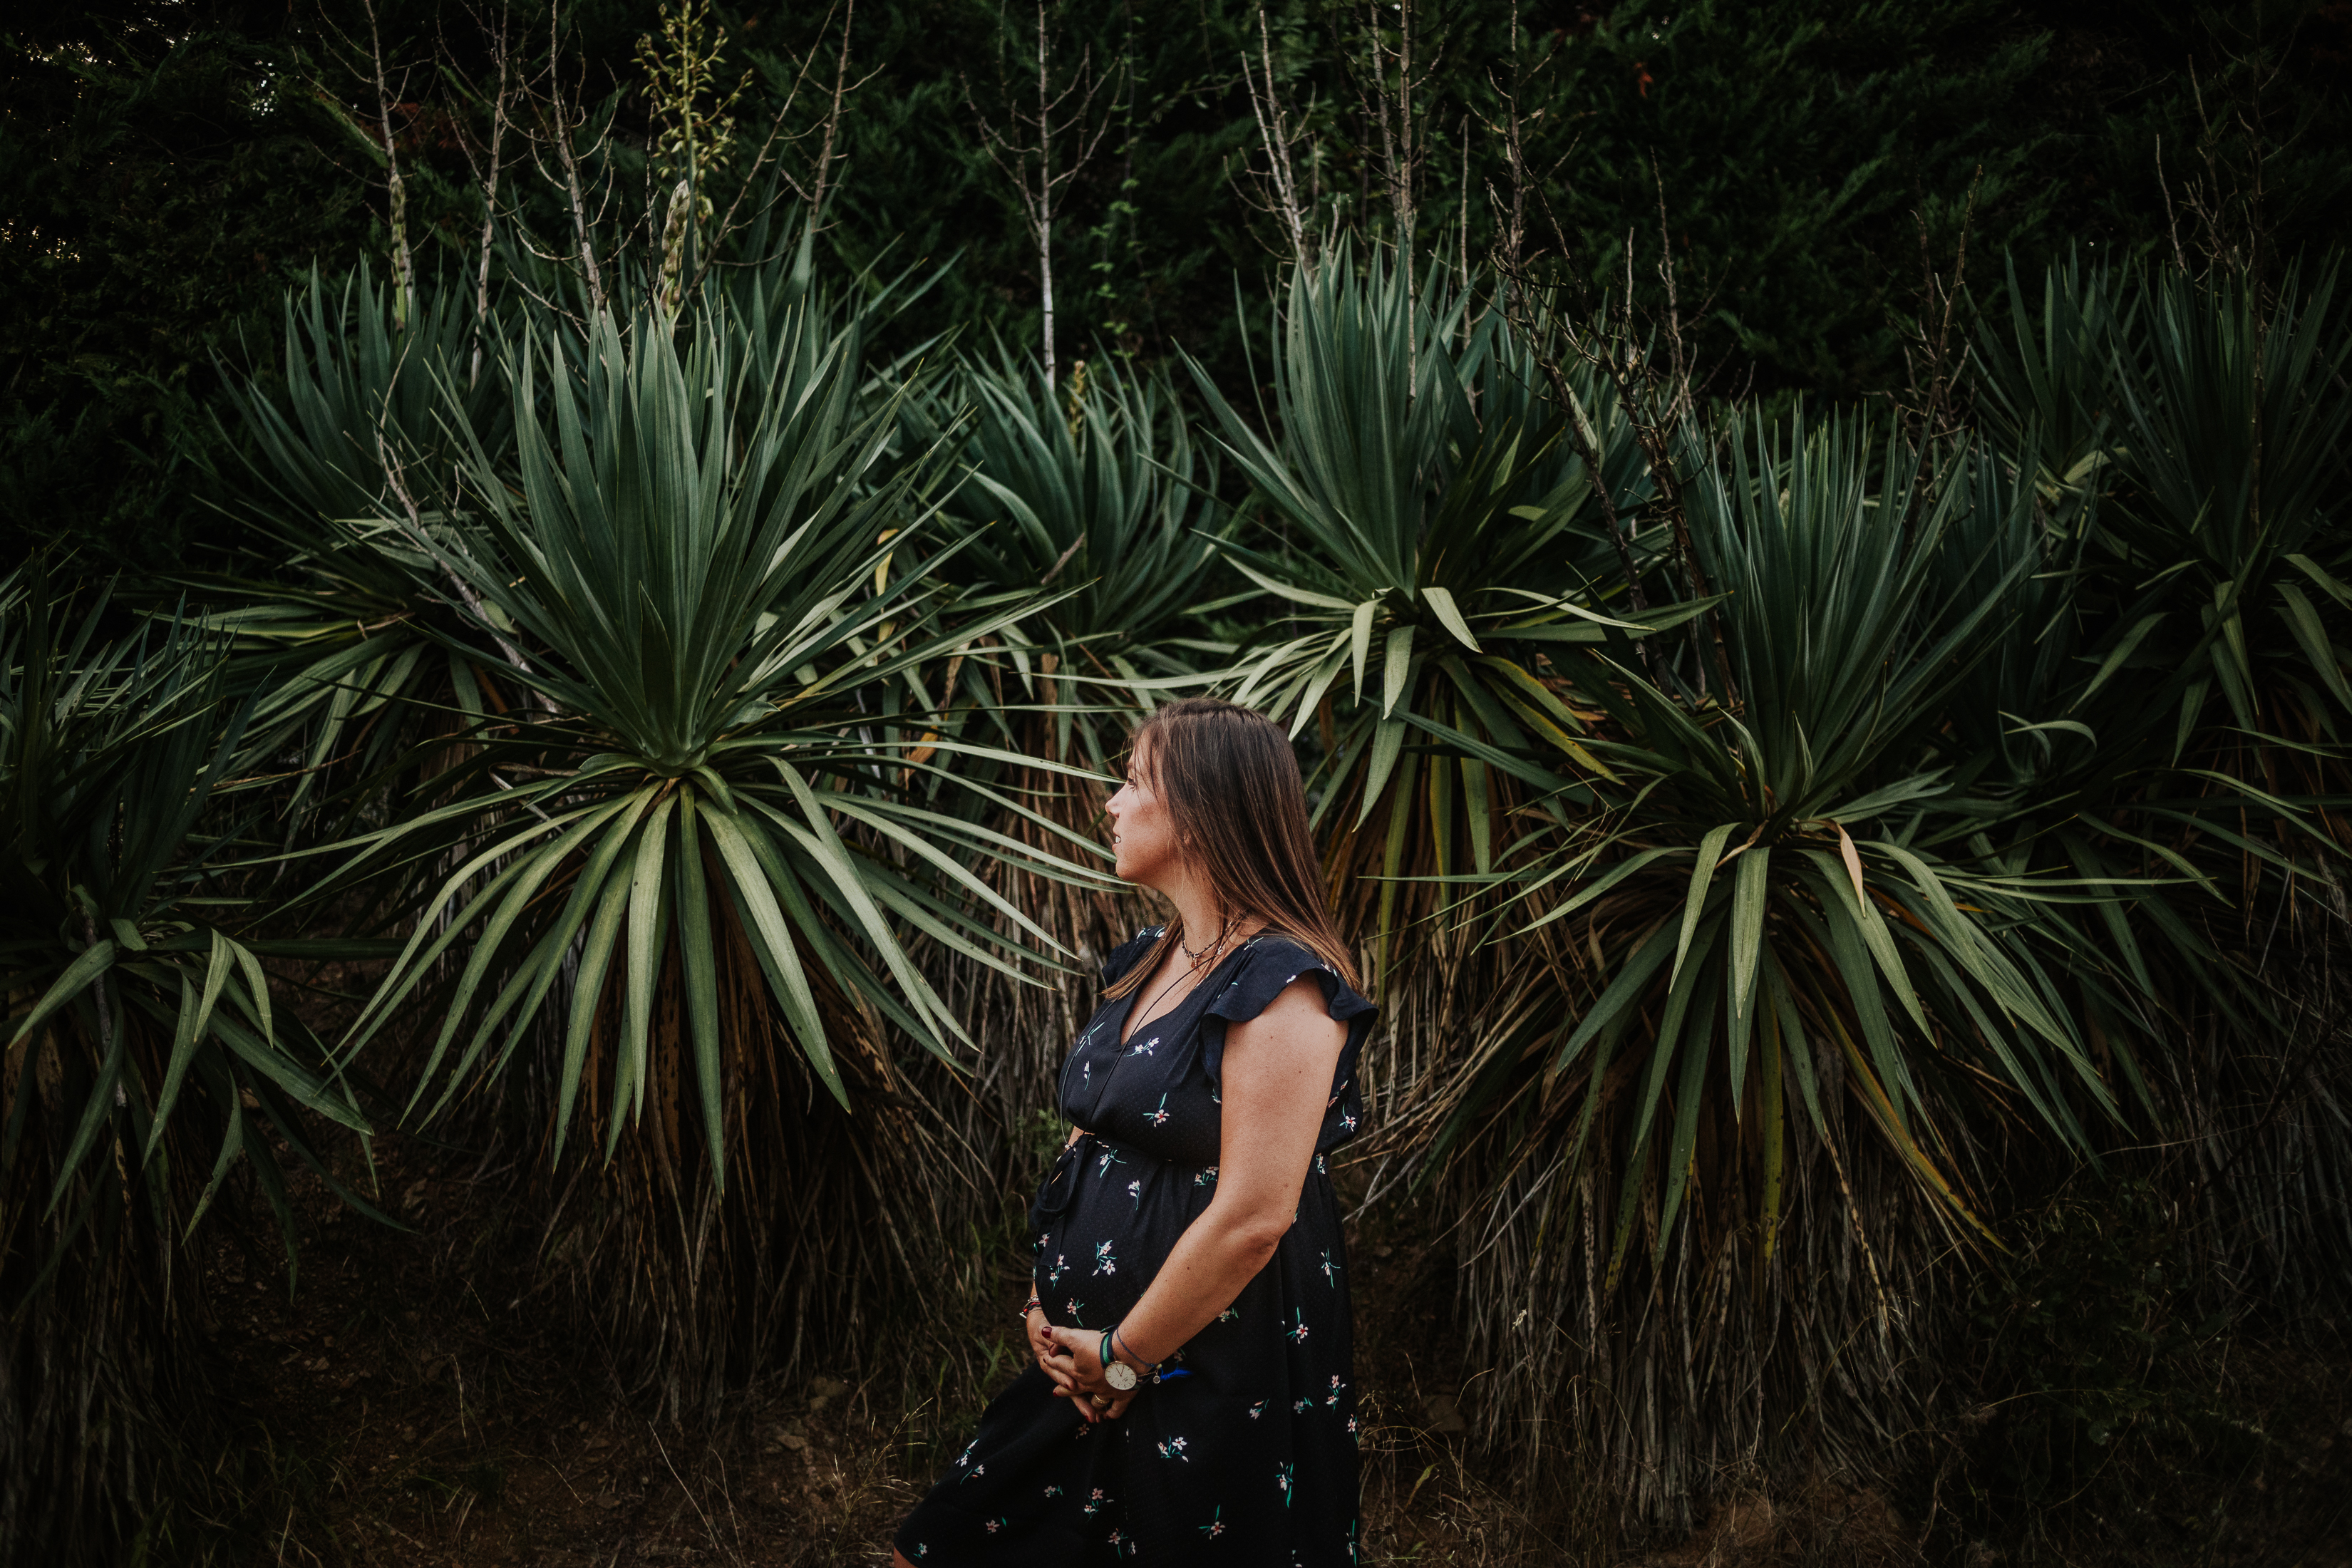 Fotógrafo embarazada Sant Cugat :: Embarazo La floresta :: fotógrafo embarazada